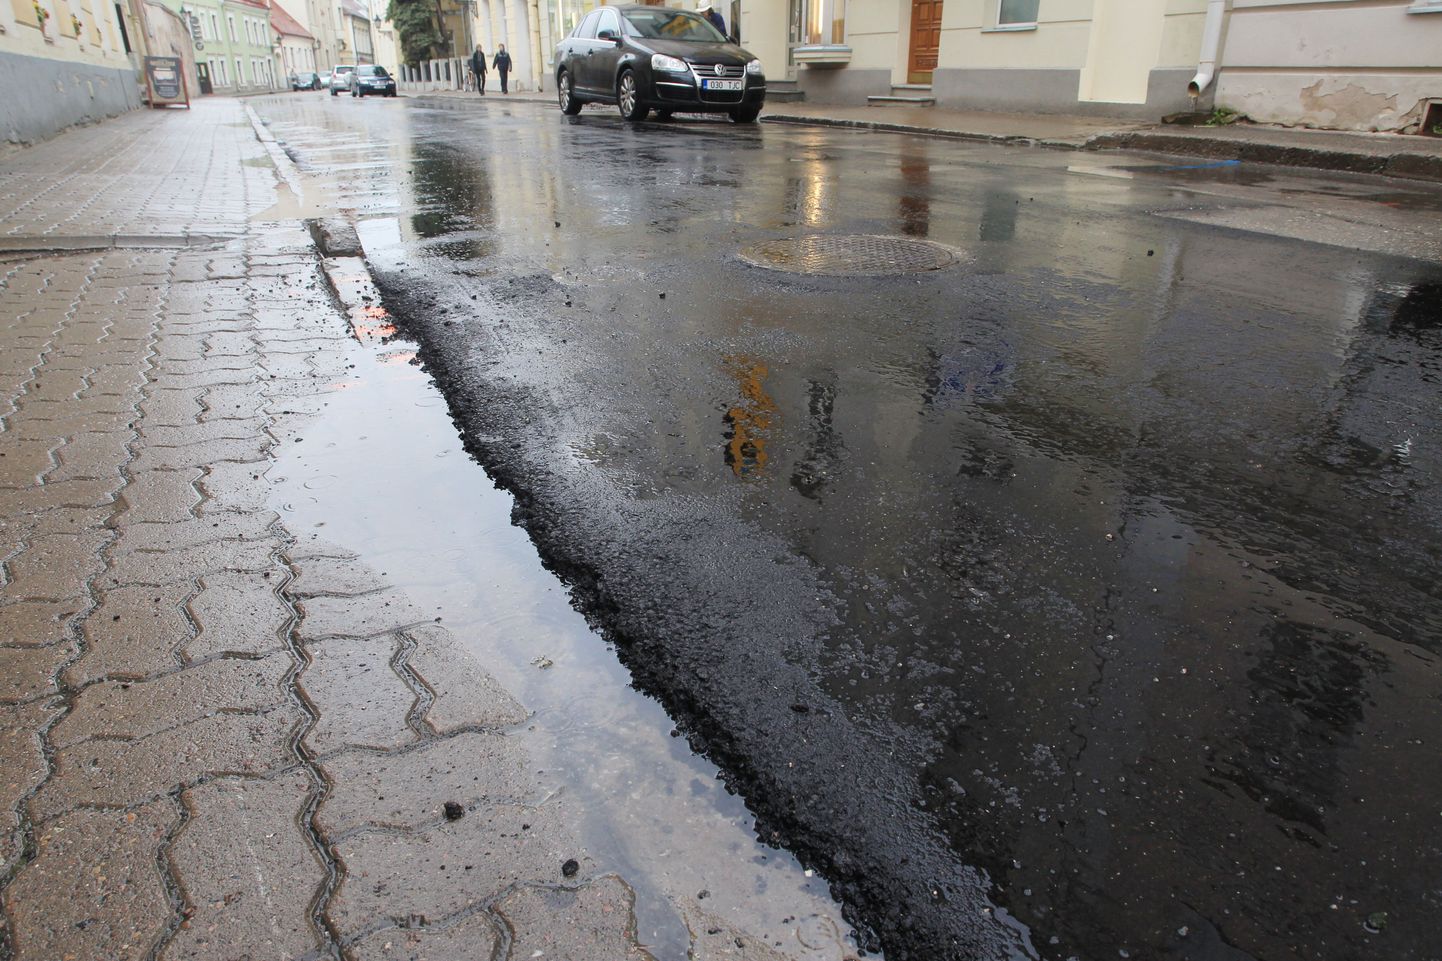 Väga konarlikuna tuntud Kompanii tänav sai üleeile osaliselt uue asfaltkatte. Kolmandiku ulatuses jäi tänavat katma aga vana künklik asfalt, mis mõjub tõrvatilgana meepotis.